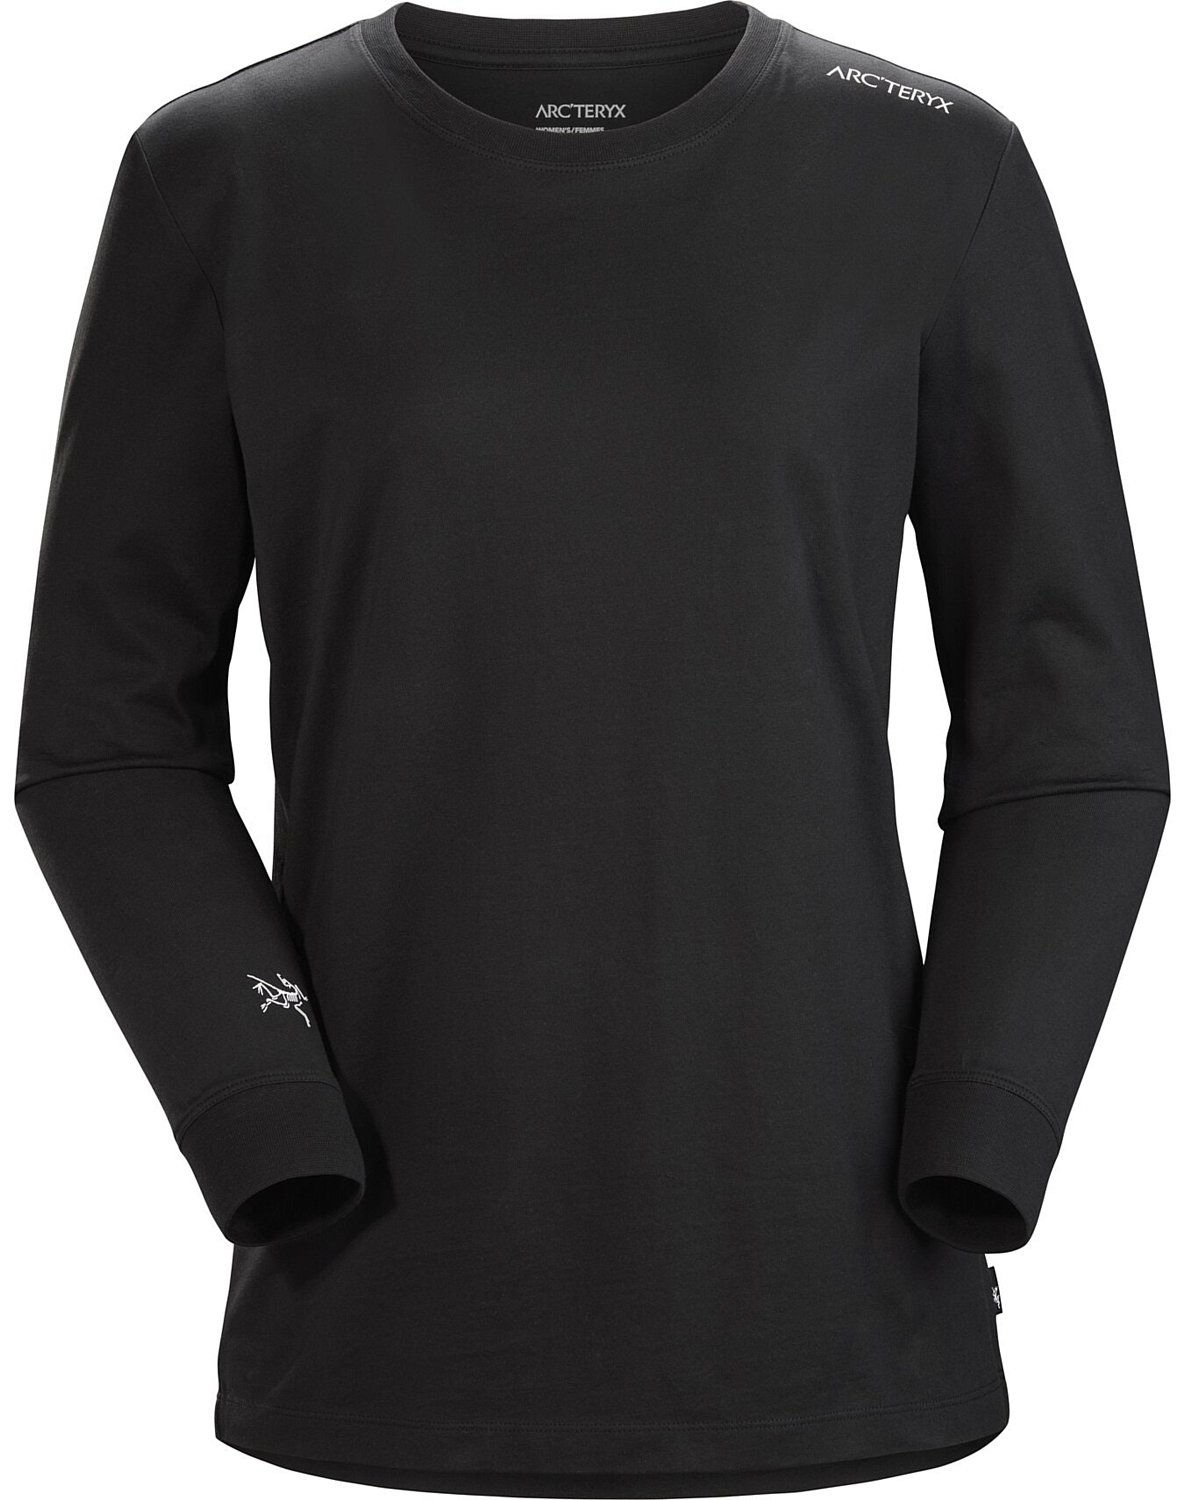 Футболка для активного отдыха Arcteryx Off-center LS T-shirt Women'S Black